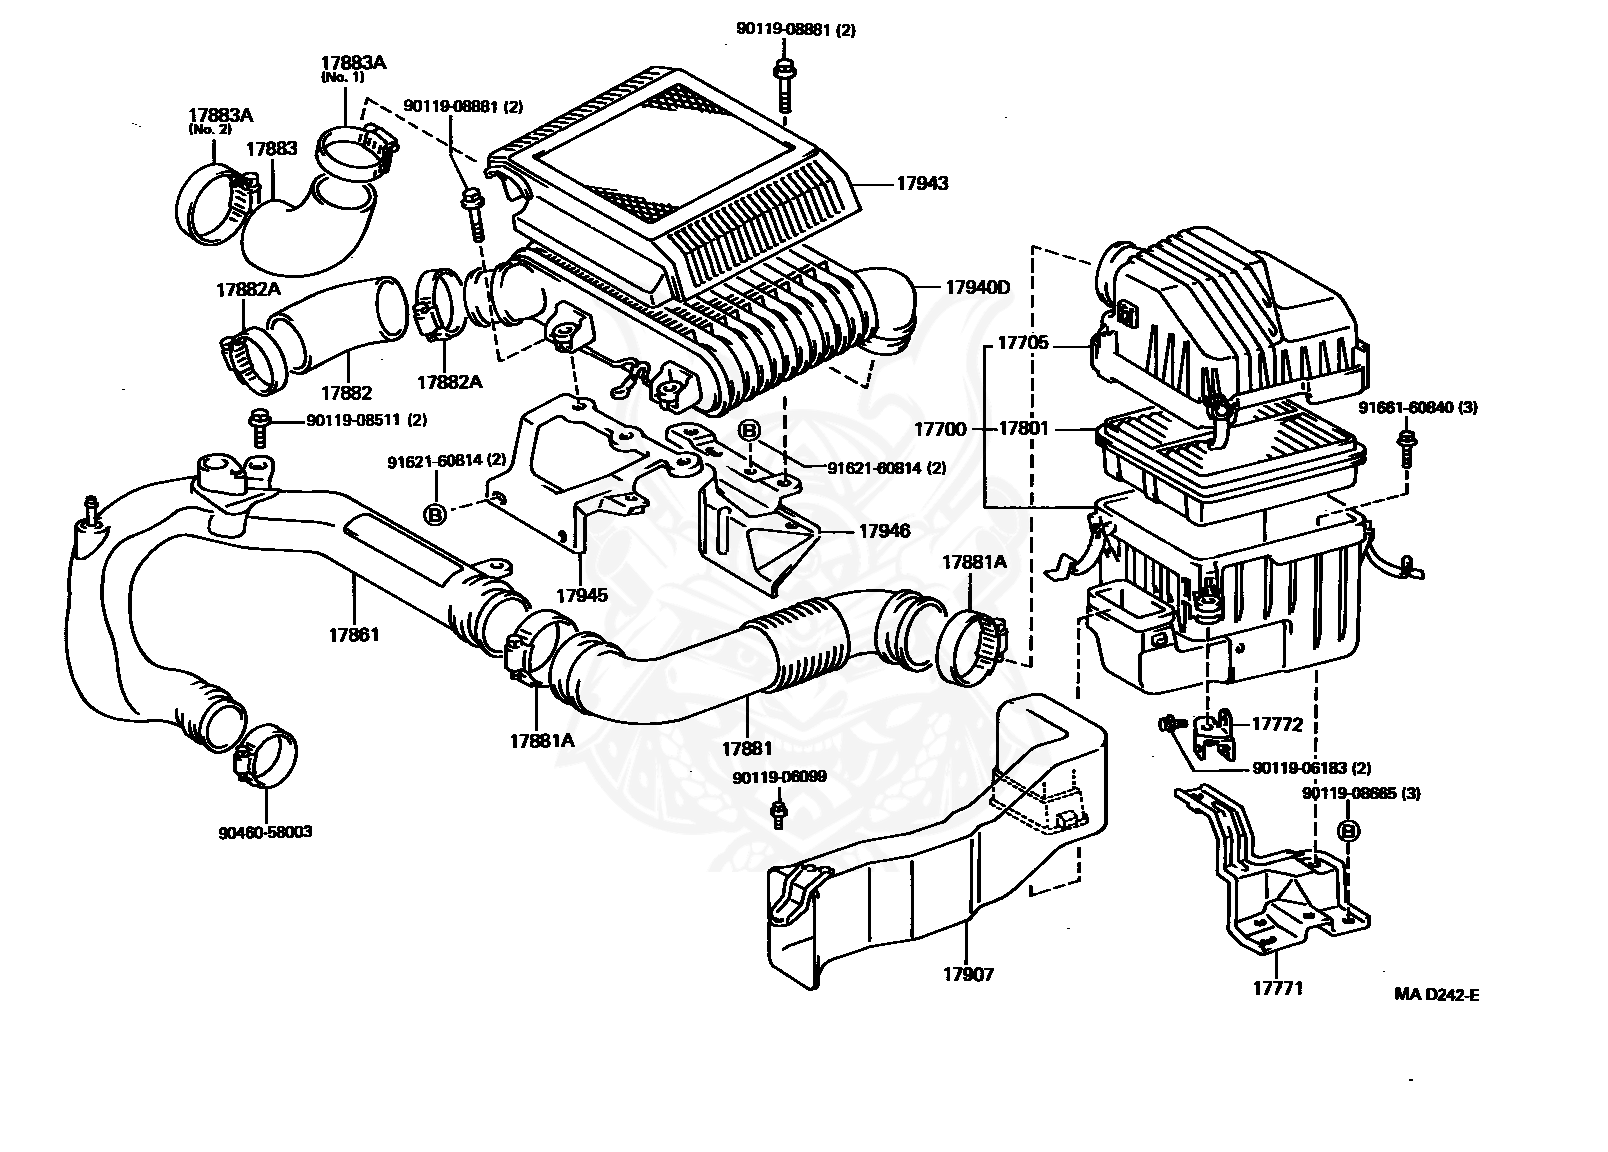 1994 Toyotum Engine Intake Diagram - Wiring Diagram Schema